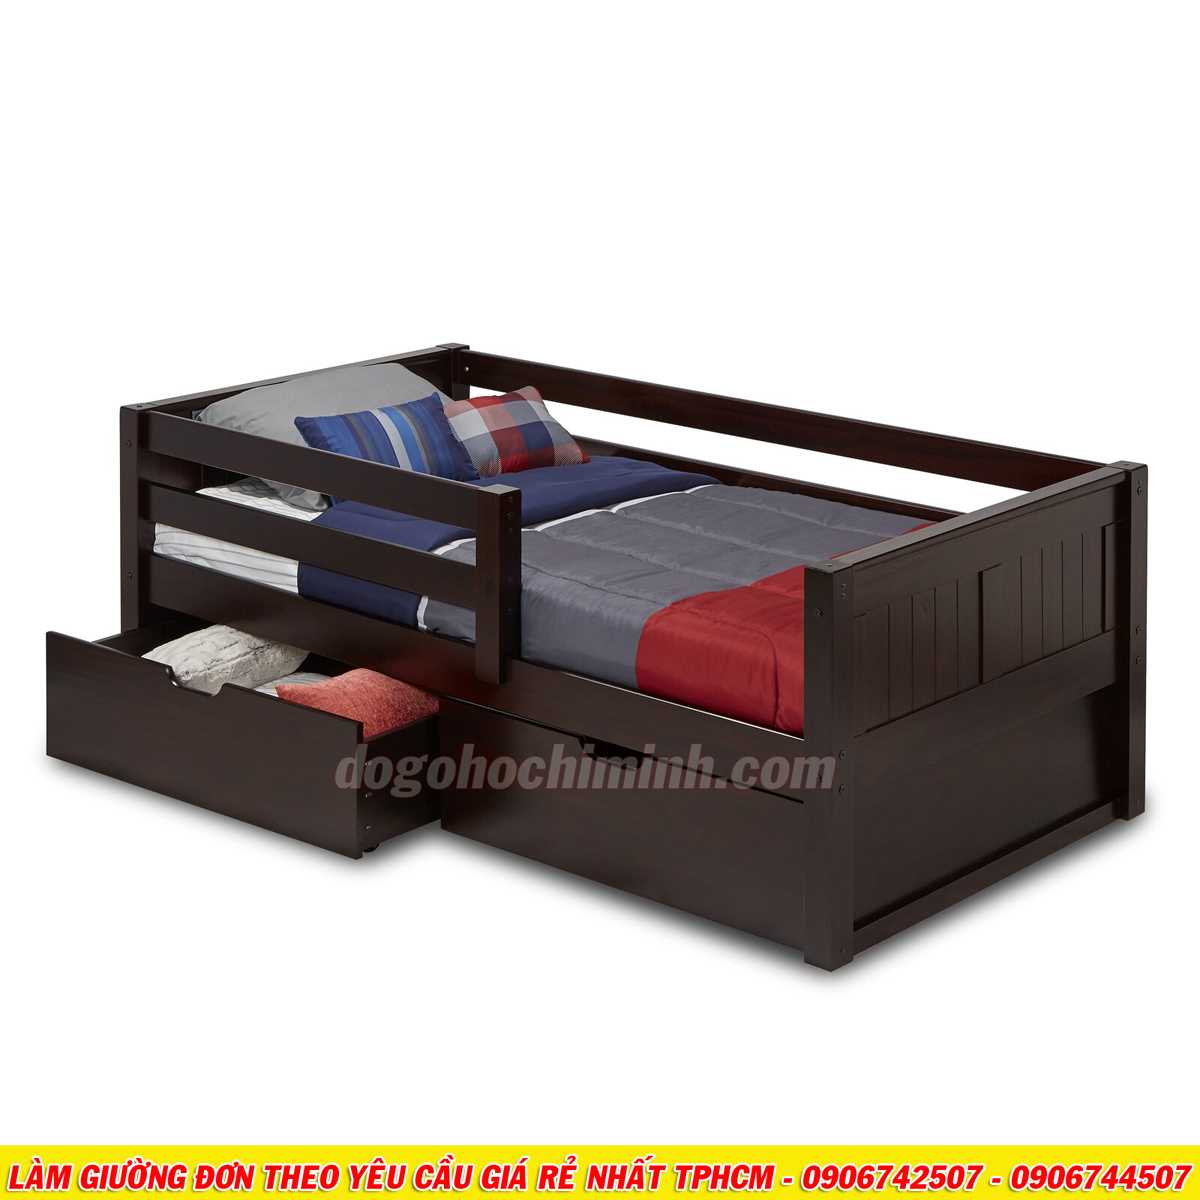 Mẫu giường đơn mới mang phong cách châu âu giá rẻ đẹp TPHCM 2020 - P3